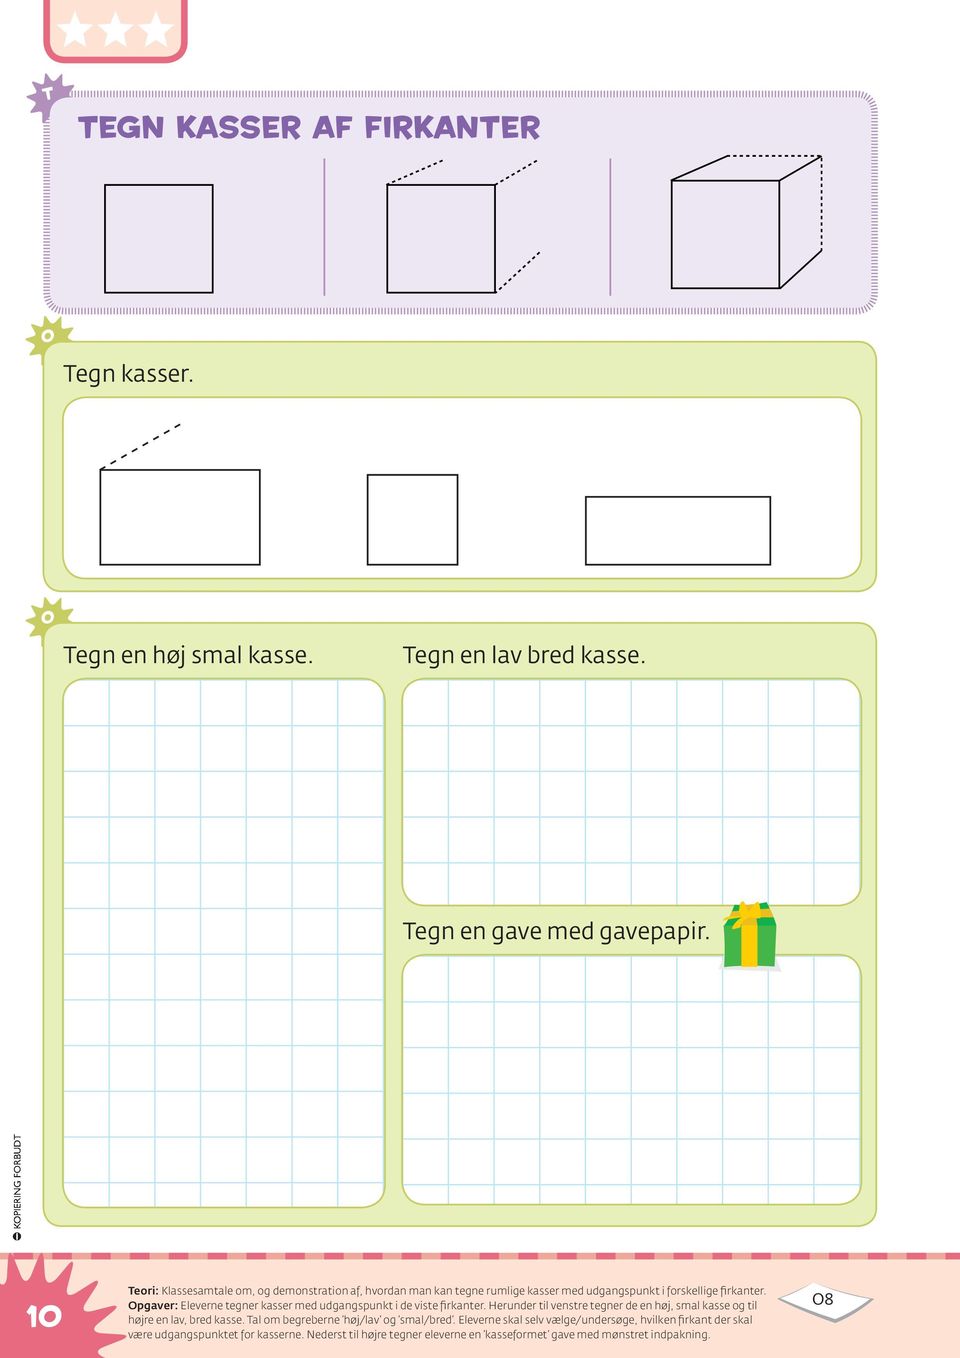 pgaver: Eleverne tegner kasser med udgangspunkt i de viste firkanter. Herunder til venstre tegner de en høj, smal kasse og til højre en lav, bred kasse.